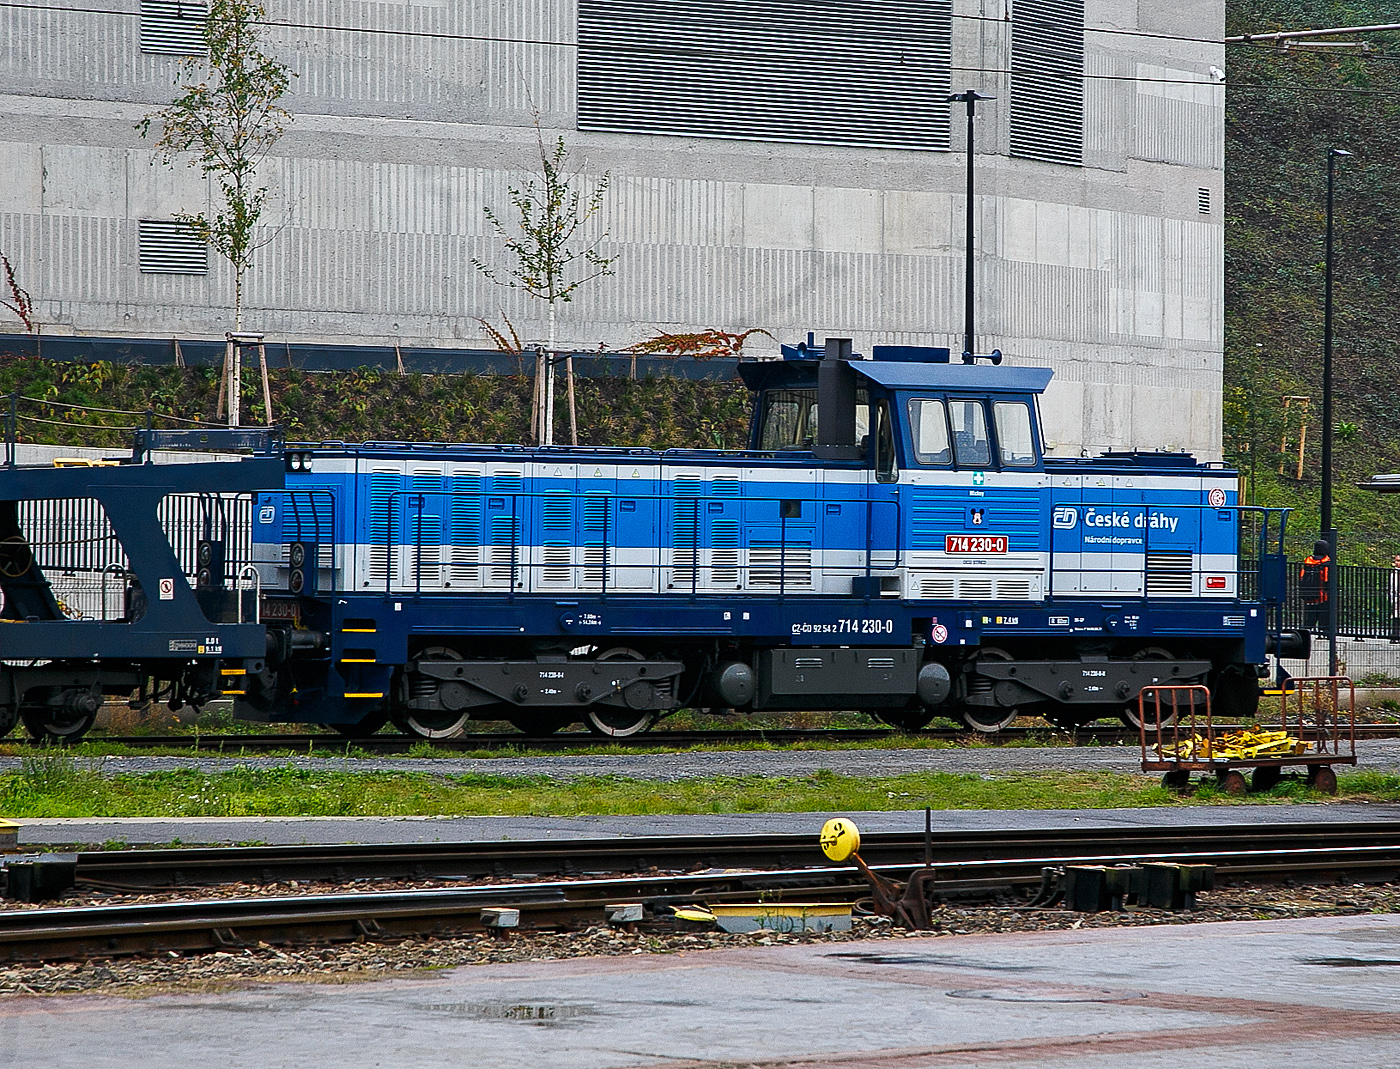 Die ČD 714 230-0 (CZ- ČD 92 54 2 714 230-0) ist am 23.11.2022, mit einem Autotransportzug, beim Prager Hauptbahnhof (Praha hlavní nádraží) abgestellt.

Die ČD-Baureihe 714 ist eine dieselelektrische Lokomotive des tschechischen Eisenbahnverkehrsunternehmens České dráhy (ČD). Sie entstand im Rahmen eines Rekonstruktionsprogrammes aus Fahrzeugen der Baureihe 735 (vormals ČSD T 466.0). Dabei wurden von den Spenderlokomotiven nur der Rahmen und die Drehgestelle verwendet. Anstatt des originalen Pielstick-Motors erhielten die Lokomotiven nunmehr zwei Maschinenanlagen mit 6-Zylinder-Reihendieselmotoren vom Typ LIAZ M 2-650, die denen der Baureihe 704 gleichen. Ab Lok 714.006 wurden neue, stärkere LIAZ M 1.2 C-Motoren verbaut. Jede der Maschinenanlagen gibt ihre Leistung auf je ein Drehgestell ab, so dass ein Betrieb mit nur einem Motor problemlos möglich ist. Als Betriebsbremse dient zusätzlich eine elektrische Widerstandsbremse mit einer Leistung von 1.020 kW. Außer den beiden Prototypen erhielten die Lokomotiven neue Aufbauten, die durch ihre niedrige Bauform dem Lokführer eine gute Streckensicht ermöglichen.

Das Mittelführerhaus bietet hervorragende Sichtverhältnisse.
Die Lokomotiven habe ein Umlaufgeländer, das Führerhaus ist durch die Türen in den Vorderwänden von dem Umlauf zugänglich. Der Hauptrahmen mit den Drehgestellen ist original aus der Baureihe 735. Die Verbindung des Rahmens mit den Drehgestellen erfolgt über Drehzapfen, die in die Querträger des Hauptrahmens eingepresst sind. Der Lokrahmen ist mit Silentblöcken auf dem Drehgestellen befestigt. Beide Drehgestelle werden angetrieben.

In jedem Drehgestell sind zwei Fahrmotoren mit Drucklagern gelagert. In der längeren Fronthaube sind zwei baugleiche LIAZ wassergekühlte Viertakt-Sechszylinder-Reihendieselmotoren mit Direkteinspritzung und Turboaufladung, vom Typ M 1.2 C - M 640D hintereinander untergebracht. Die Motoren haben eine Nockenwelle, der Ventiltrieb ist OHV. Für jeden Zylinder gibt es je zwei Einlass- und Auslassventile. Jeder Dieselmotor ist über eine elastische Kupplung an einen eigenen Traktionsgenerator angeflanscht. Der Kraftstofftank ist unter dem Lokrahmen zwischen den Drehgestellen aufgehängt. Die Lokomotive kann auch mit einem abgeschalteten Motorgenerator betrieben werden (dann sind nur zwei Traktionselektromotoren in Betrieb). Die Lokomotive ist mit einer Handbremse, einer selbsttätigen Druckbremse des Systems DAKO DK-GP, einer Direktbremse und einer elektrodynamischen Bremse ausgestattet. Die Handbremse wirkt immer auf ein Rad des benachbarten Fahrgestells, sie wird manuell an den Stationen gelöst. Die selbsttätige Druckbremse wird von der DAKO BSE-Elektrobremse mit DAKO OBE1-Steuerung gesteuert. Die direkte Bremse wird von einer elektrischen DAKO BPE-Bremse gesteuert, die von ČKD OBP-2E-Steuerungen gesteuert wird. Die Drucklufterzeugung erfolgt über zwei mechanisch angetriebene Dreizylinder-Kompressoren 3 DSK 100. Die Lokomotive verfügt über zwei Hauptluftbehälter mit einem Gesamtvolumen von 1.000 l (p = 10 bar) und drei Hilfsluftbehälter mit einem Gesamtvolumen von 120 l Bremsverteiler ist vom Typ DAKO LTR. In jedem Fahrgestell befinden sich zwei Bremszylinder mit einem Durchmesser von 8  (pmax = 4 bar). Alle vier Räder werden durch eine doppelseitige Klotzreibungsbremse gebremst. Die Lokomotive hat einen max. Sandvorrat von 400 kg.

Die Lokomotiven wurden in zwei Ausführungen mit unterschiedlichem Gewicht geliefert. Die üblichen Lokomotiven der BR 714.0 wiegen 60 Tonnen (15 t Achslast), während die Maschinen der BR 714.2 im Betrieb 64 Tonnen (16 t Achslast) wiegen.

TECHNISCHE DATEN der BR 714 (714.2):
Rekonstruktion: ČKD Transportsysteme (Praha)
Umbaujahre: 1994-97 
Spurweite: 1.435 mm (Normalspur)
Achsfolge: Bo'Bo'
Länge über Puffer: 14.240 mm 
Drehzapfenabstand: 7.600 mm
Achsabstand im Drehgestell: 2.400 mm
Treibrad-Ø: 1.000 mm (neu) / 920 mm (abgenutzt) 
Dieselmotor: 6-Zylinder-Viertakt-Reihen- Dieselmotor mit Direkt-Einspritzung und Turbolader vom Typ LIAZ M 1.2 C - M 640D
Motorhubraum: 11,946 Liter (Zylinder-Ø 130 mm / Kolbenhub 150 mm)
Kompressionsverhältnis: 12,5 : 1
Nenndrehzahl: 1.800 U/min (Leerlaufdrehzahl 650 U/min)
Achsübersetzung: 1:4,8125
Dauermotorleistung: 2x300 kW = 600 kW (815 PS)
Leistungsübertragung: dieselelektrisch
Fahrmotorentyp: TE 005 E
Höchstgeschwindigkeit: 80 km/h
Dienstgewicht: 60 t (64 t bei BR 714.2)
Anfahrzugkraft: 190 kN
Dauerzugkraft: 154 kN
Max. Tankinhalt: 2.000 l
Kleinster bef. Halbmesser: R 80 m

Quellen: Wikipedia, atlaslokomotiv.net